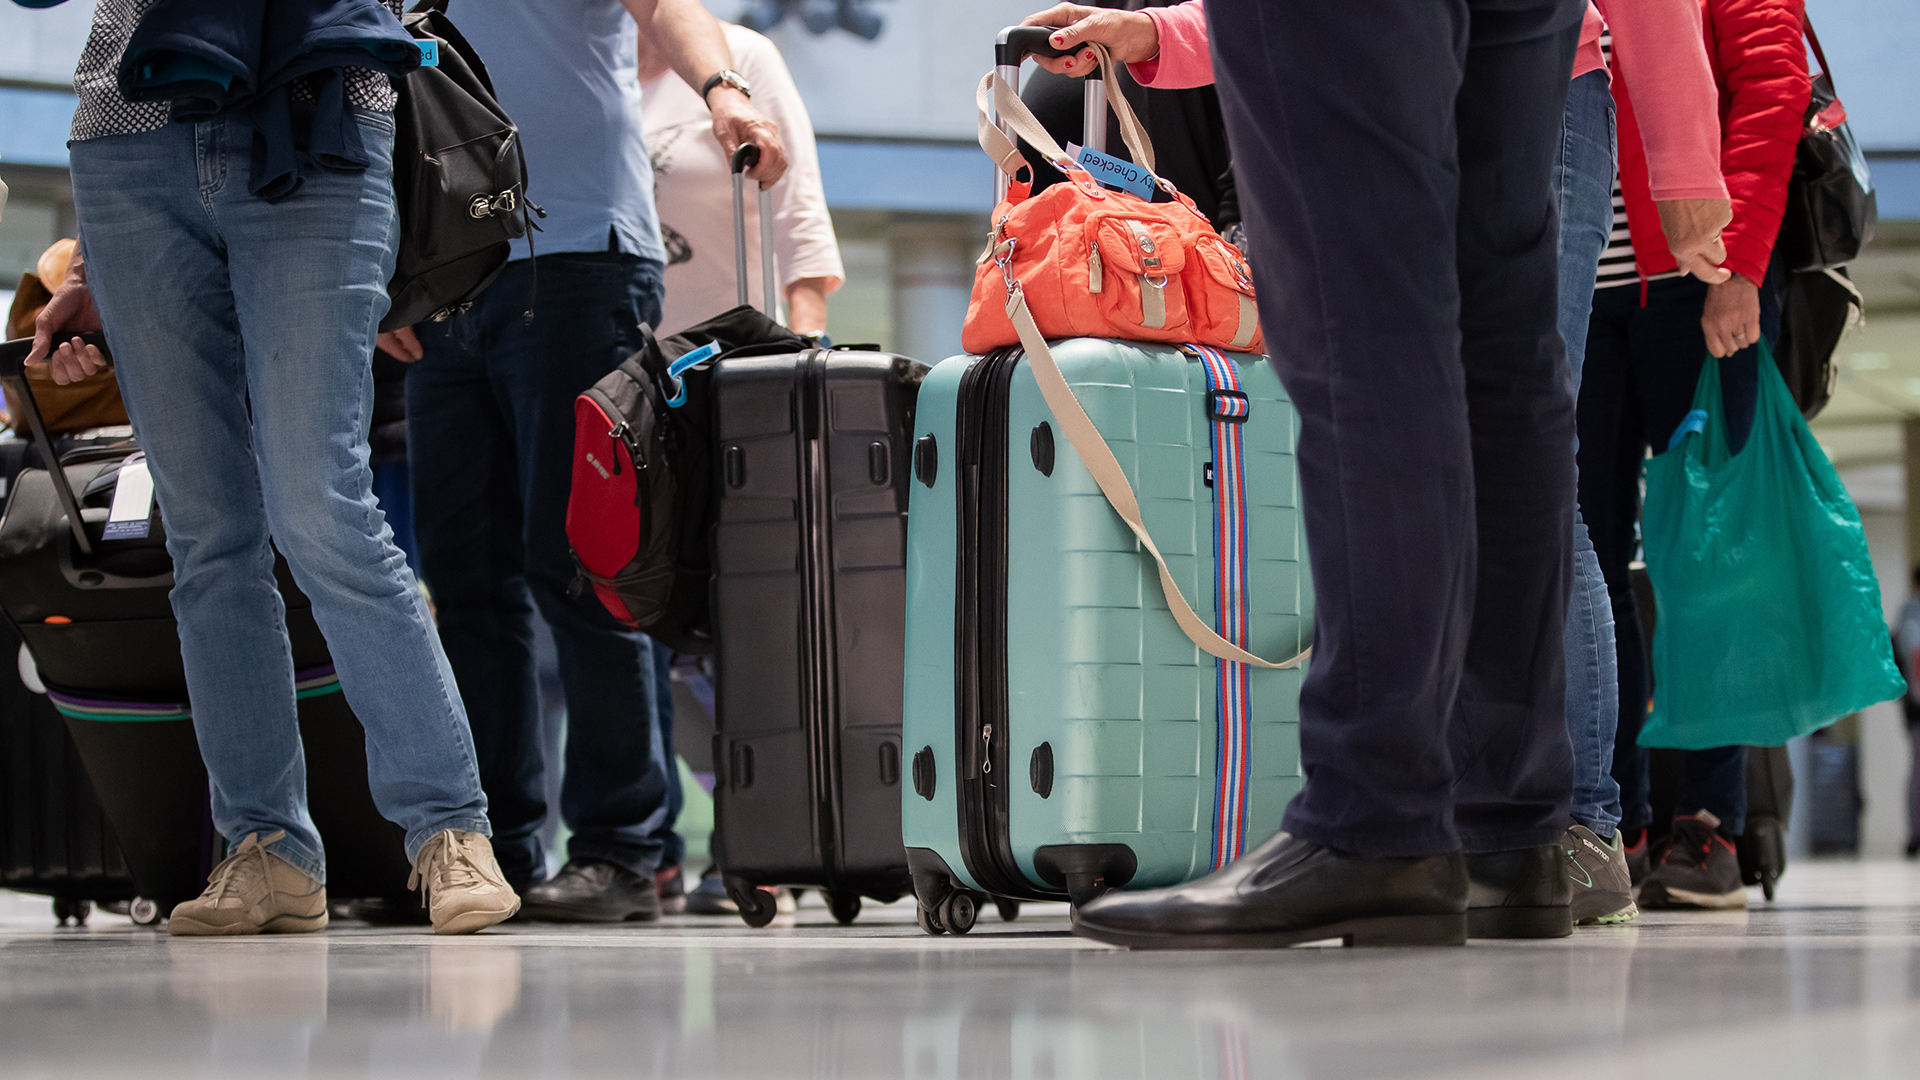 Passagiere stehen mit ihrem Gepäck im Flughafen | dpa